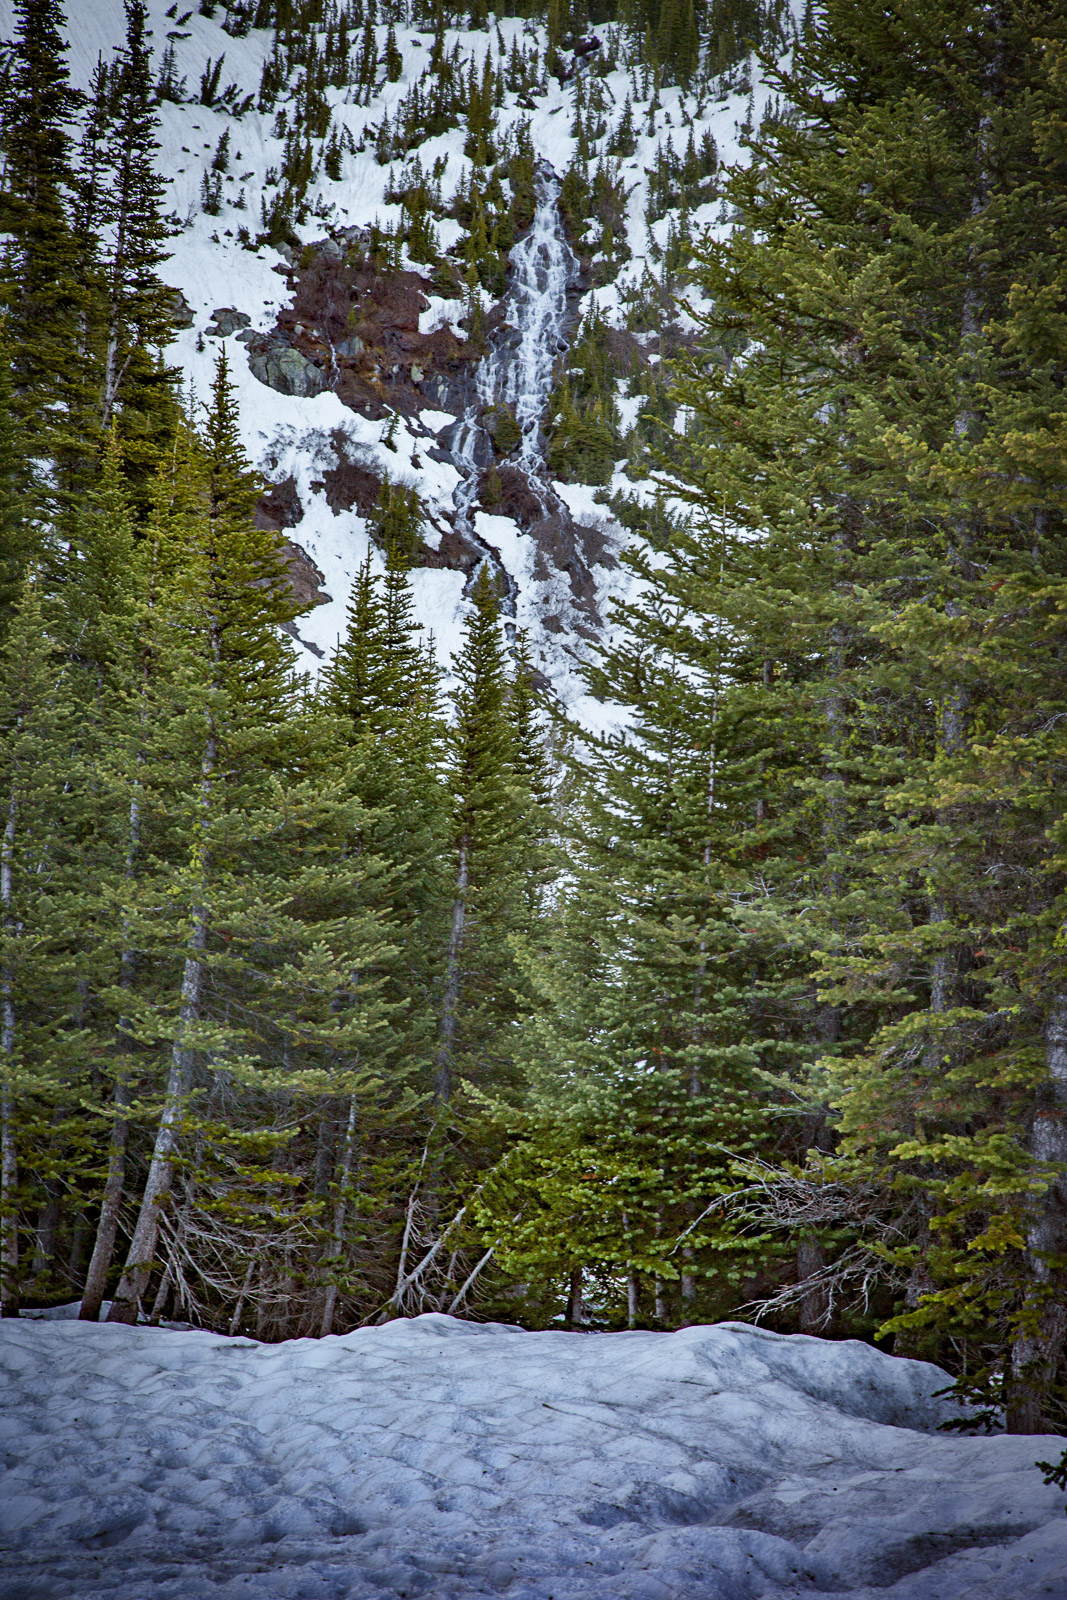 First view of the Snowmelt cascade